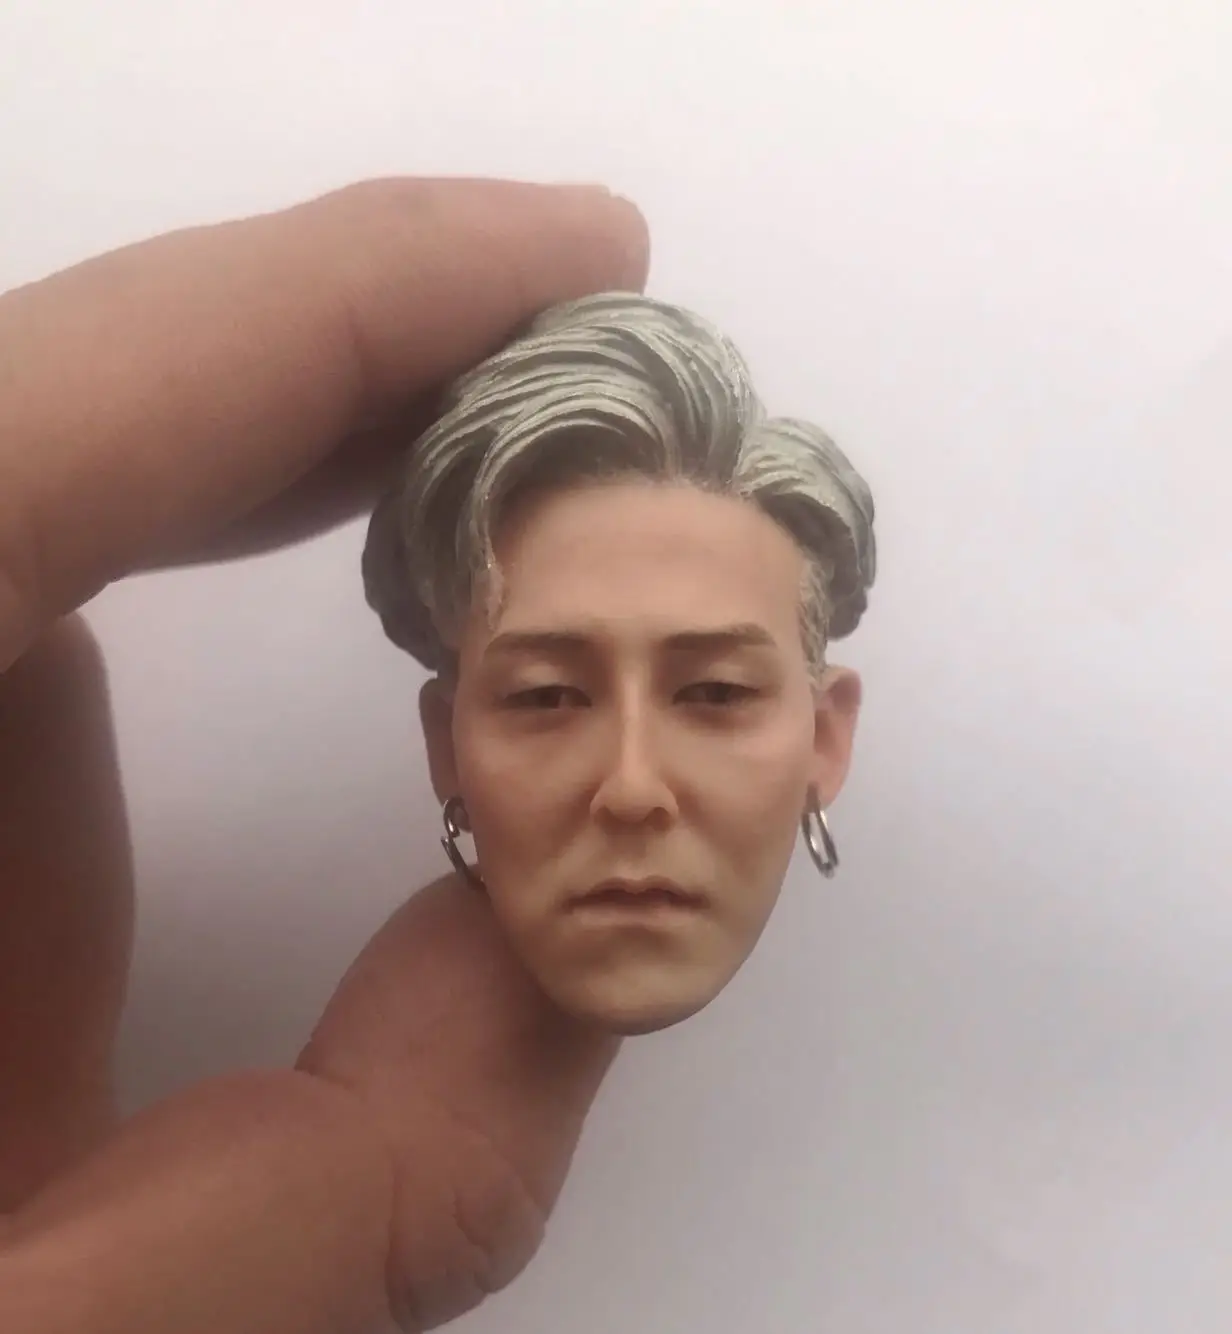 Белые волосы BigBang голова Sculpt 1/6 масштаб Корея звезда SEUNGRI голова модель с серьгами